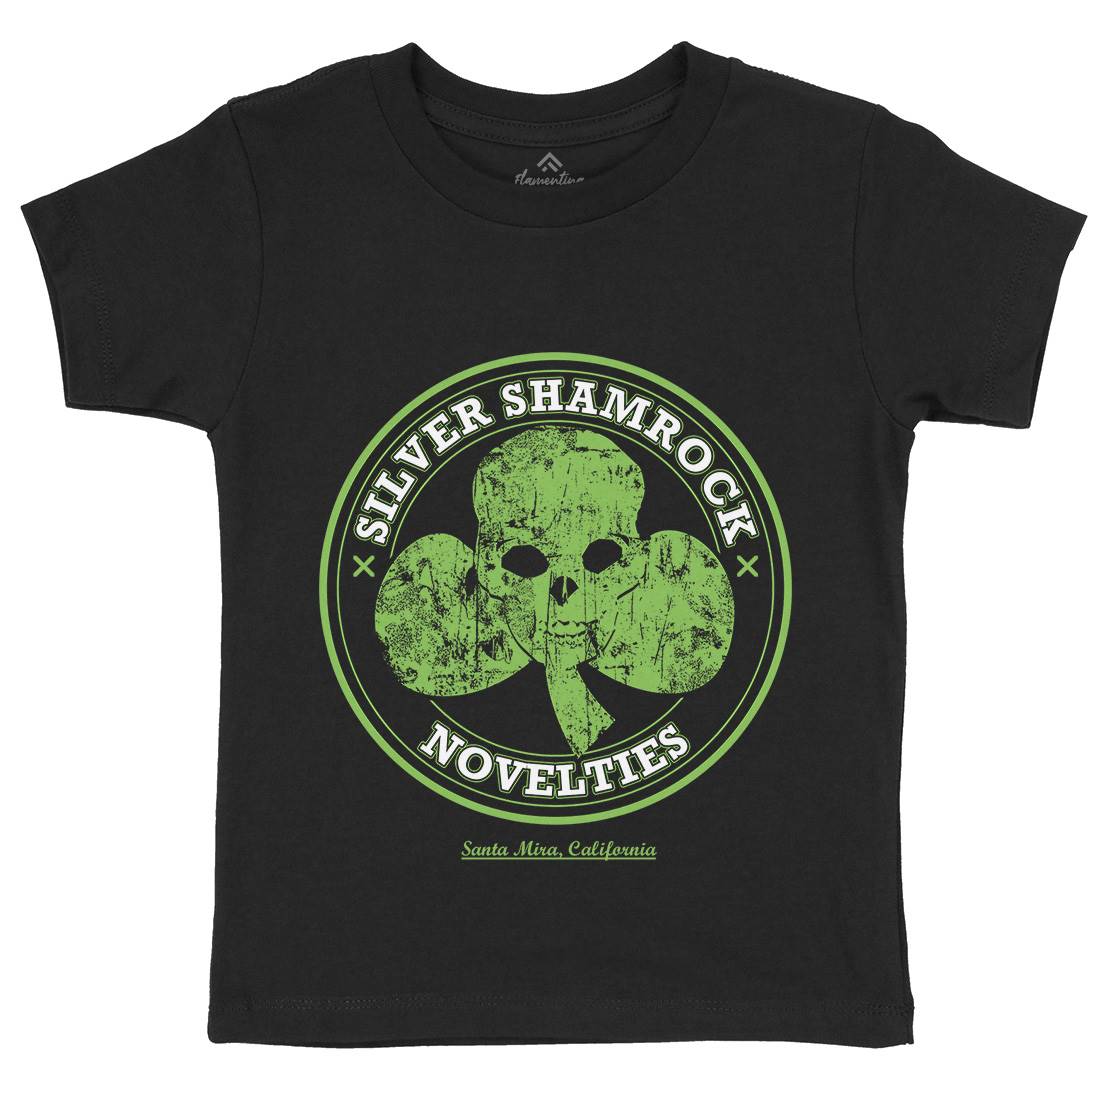 Silver Shamrock Novelties Kids Crew Neck T-Shirt Horror D332